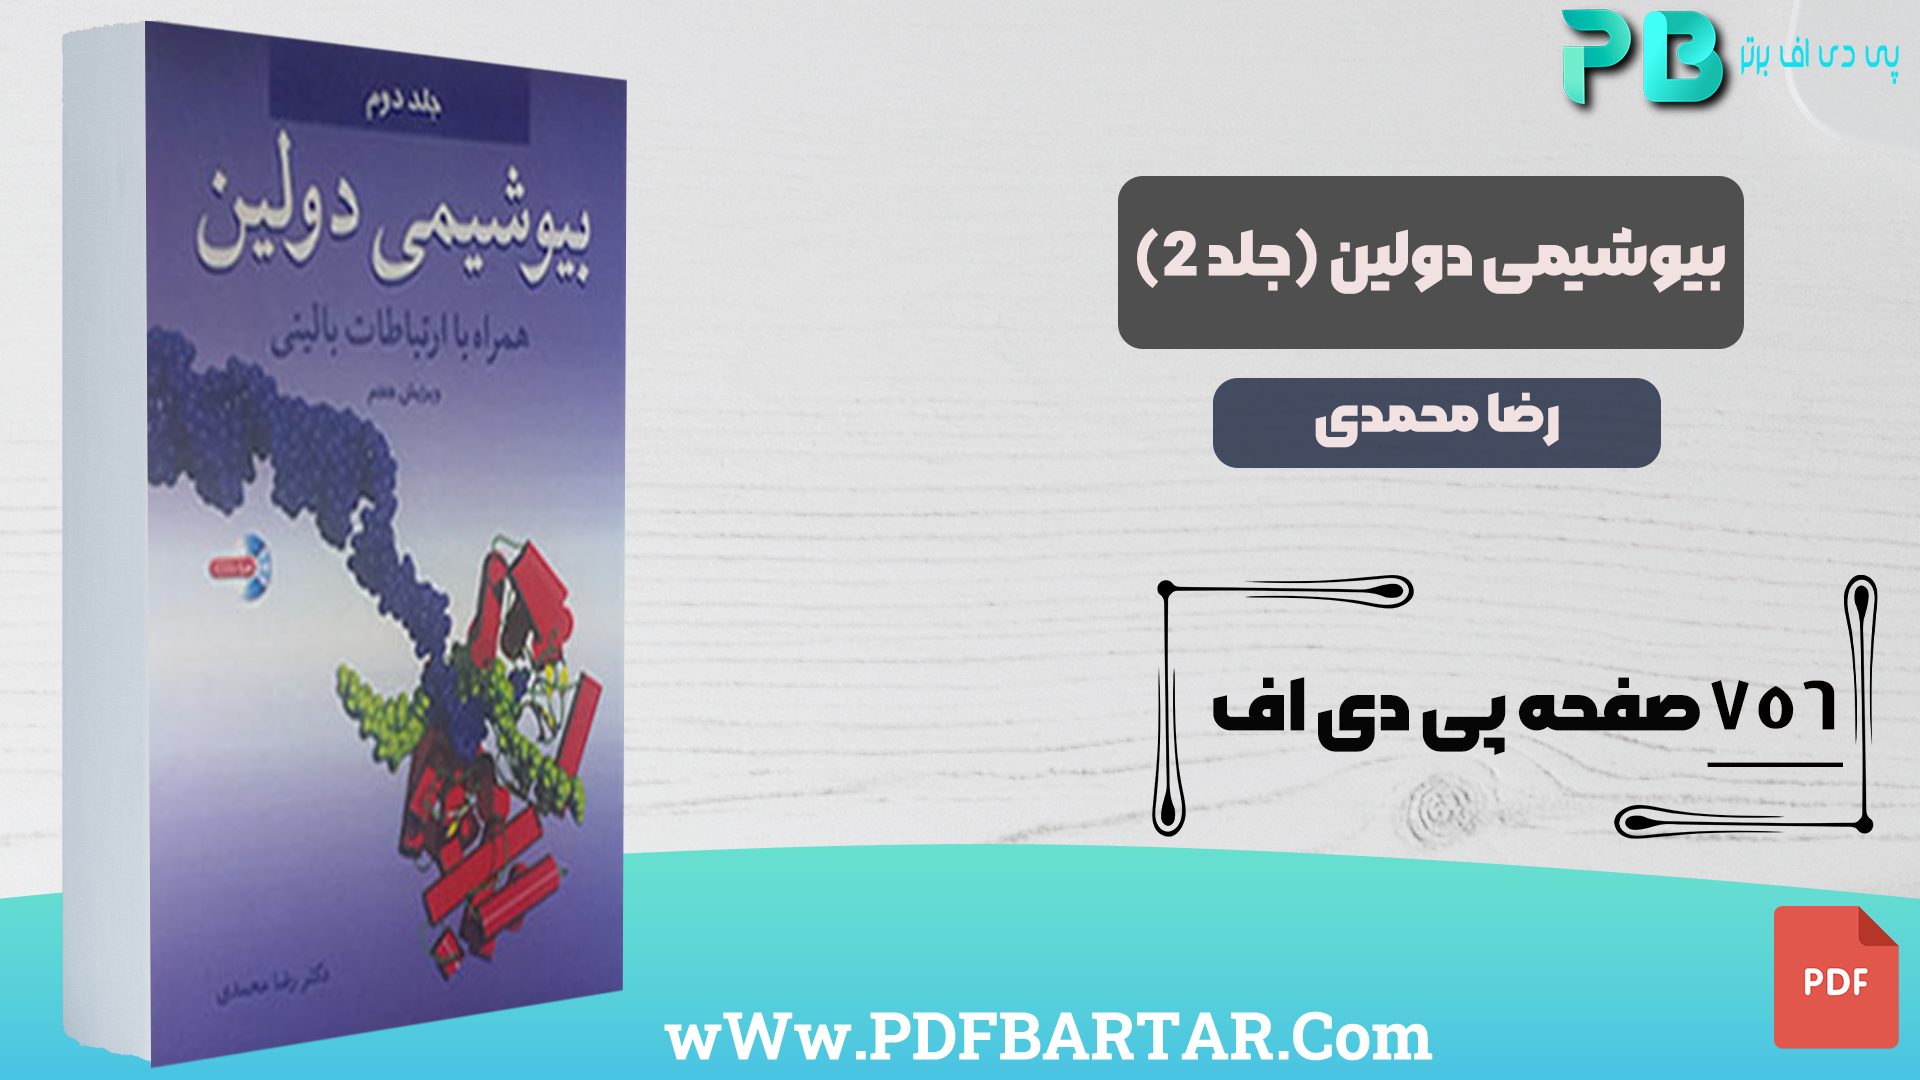 دانلود پی دی اف کتاب بیوشیمی دولین جلد 2 رضا محمدی PDF + قابل سرچ